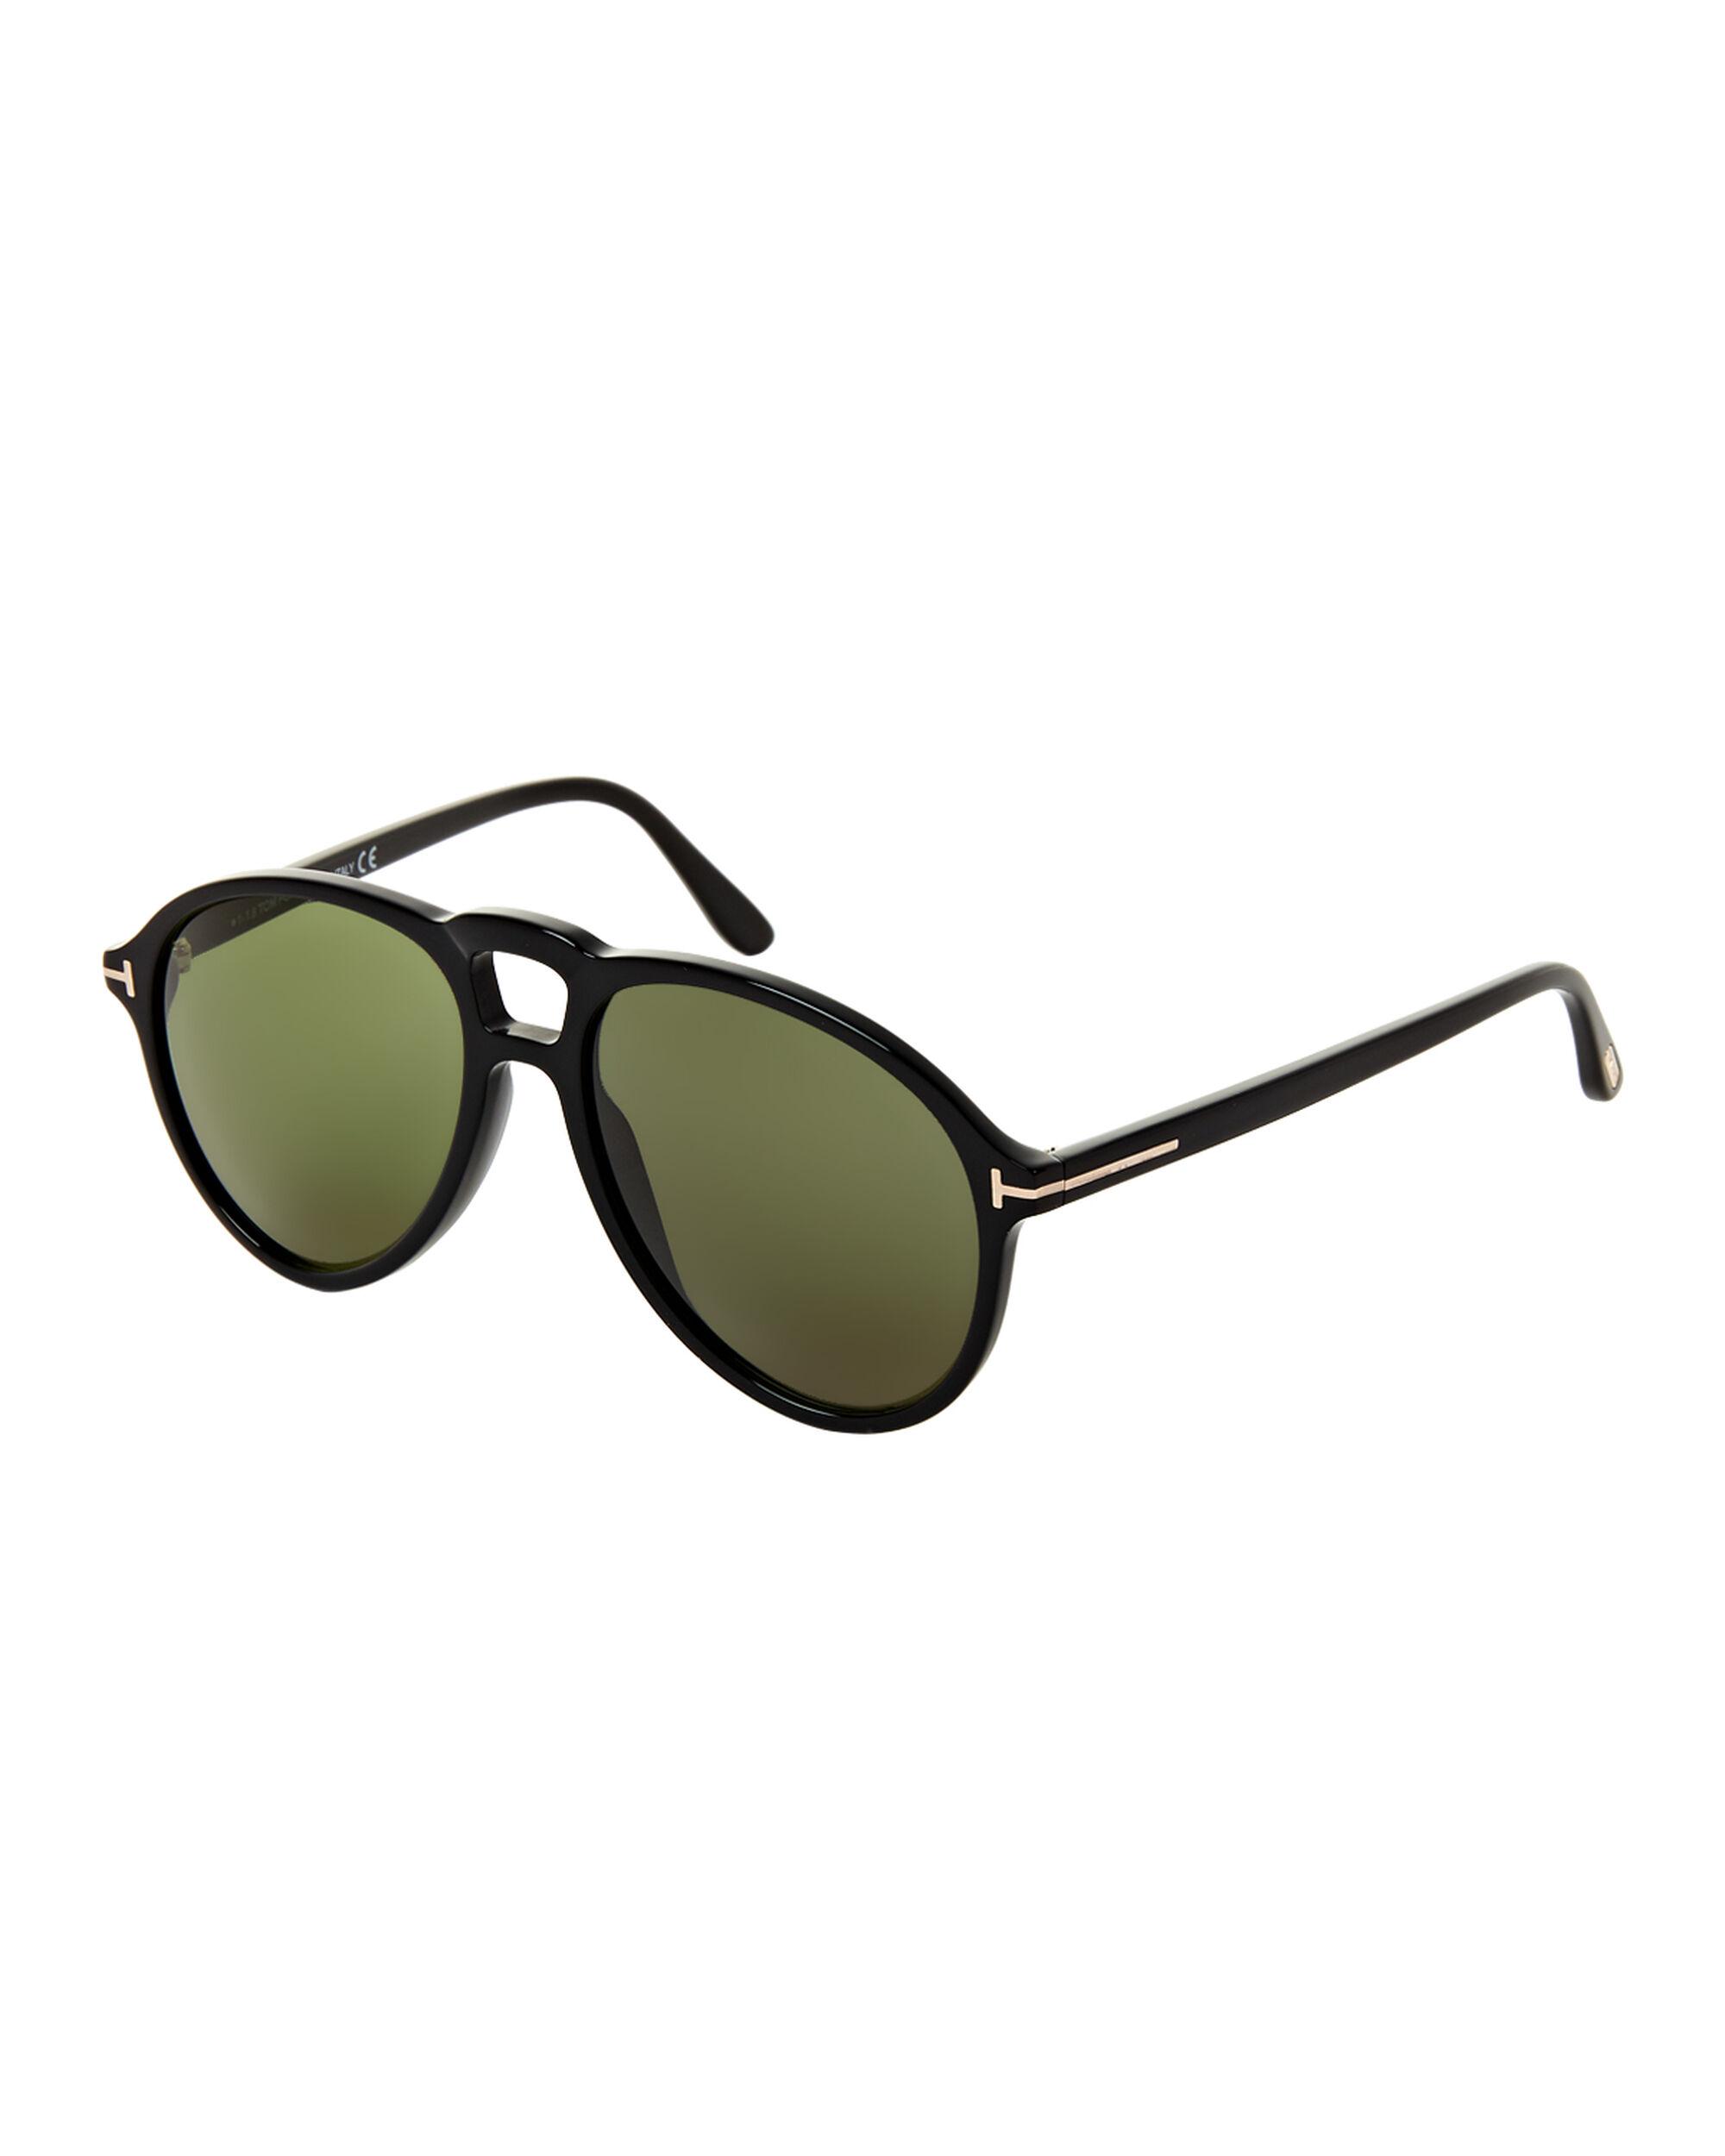 Tom Ford Tf645 Lennon Black Aviator Sunglasses For Men Lyst